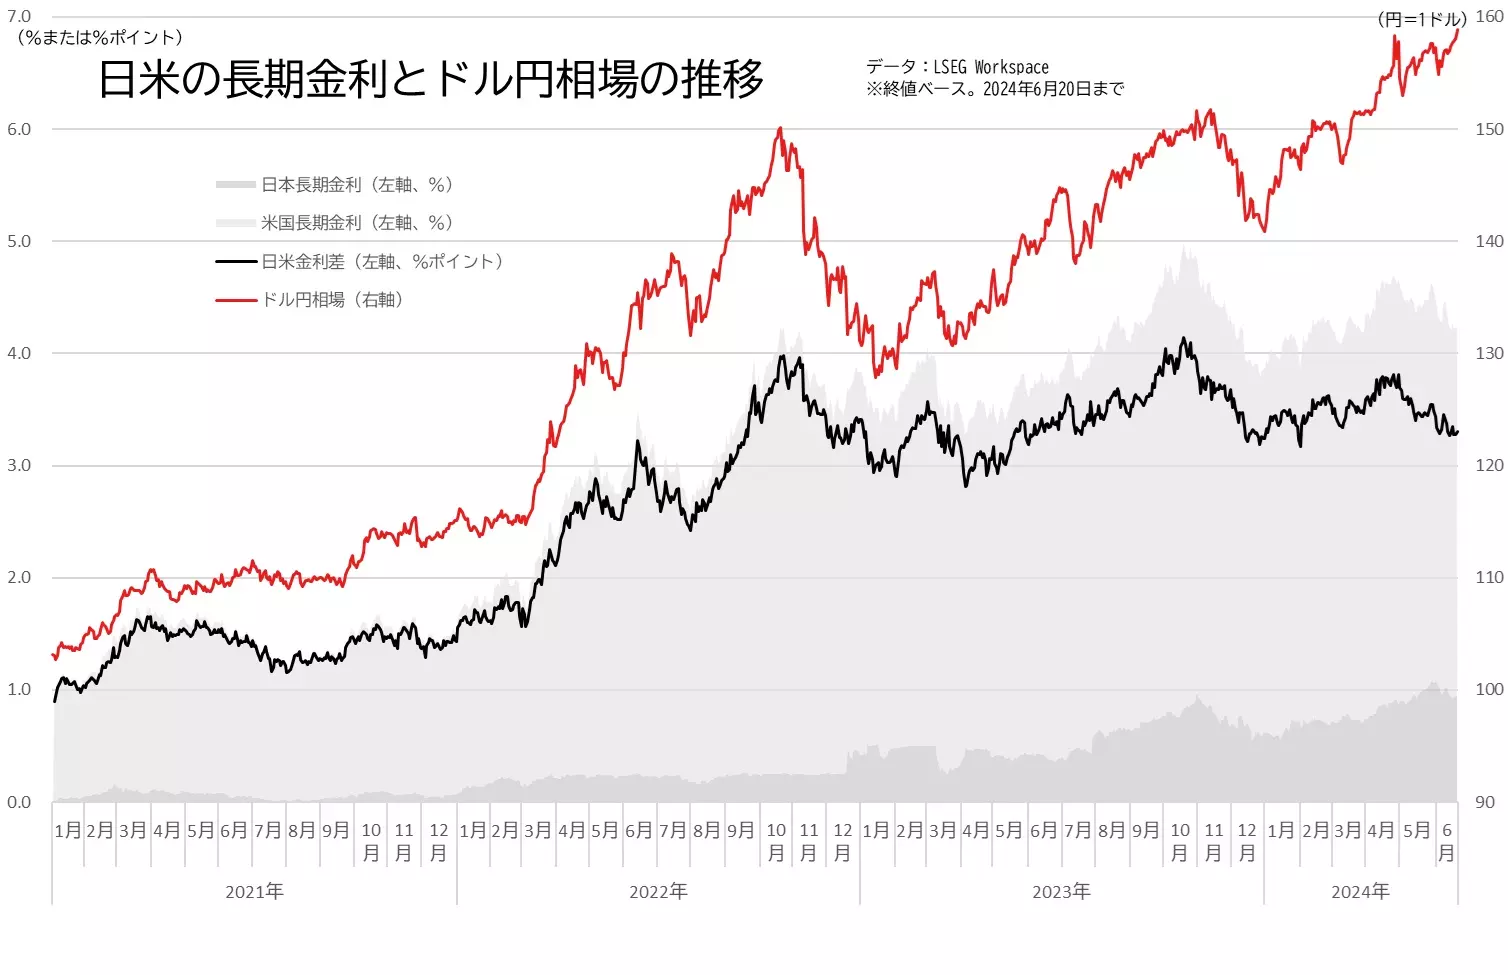 日米の長期金利差とドル円相場の推移のグラフ